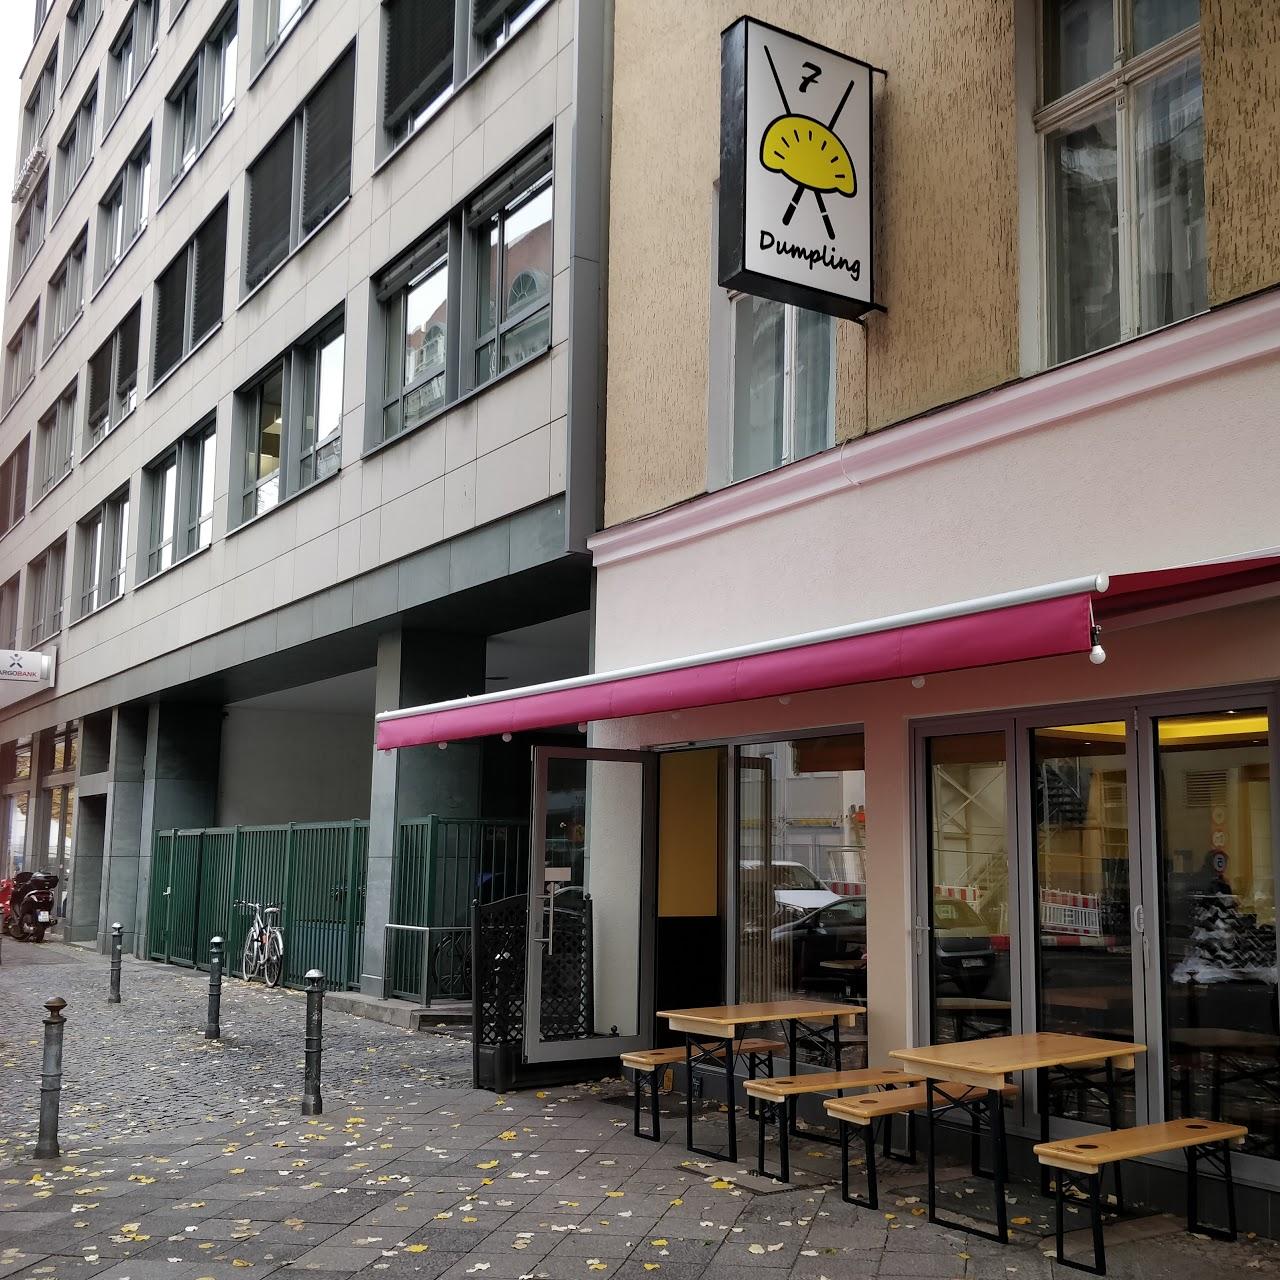 Restaurant "7 Dumpling" in Berlin